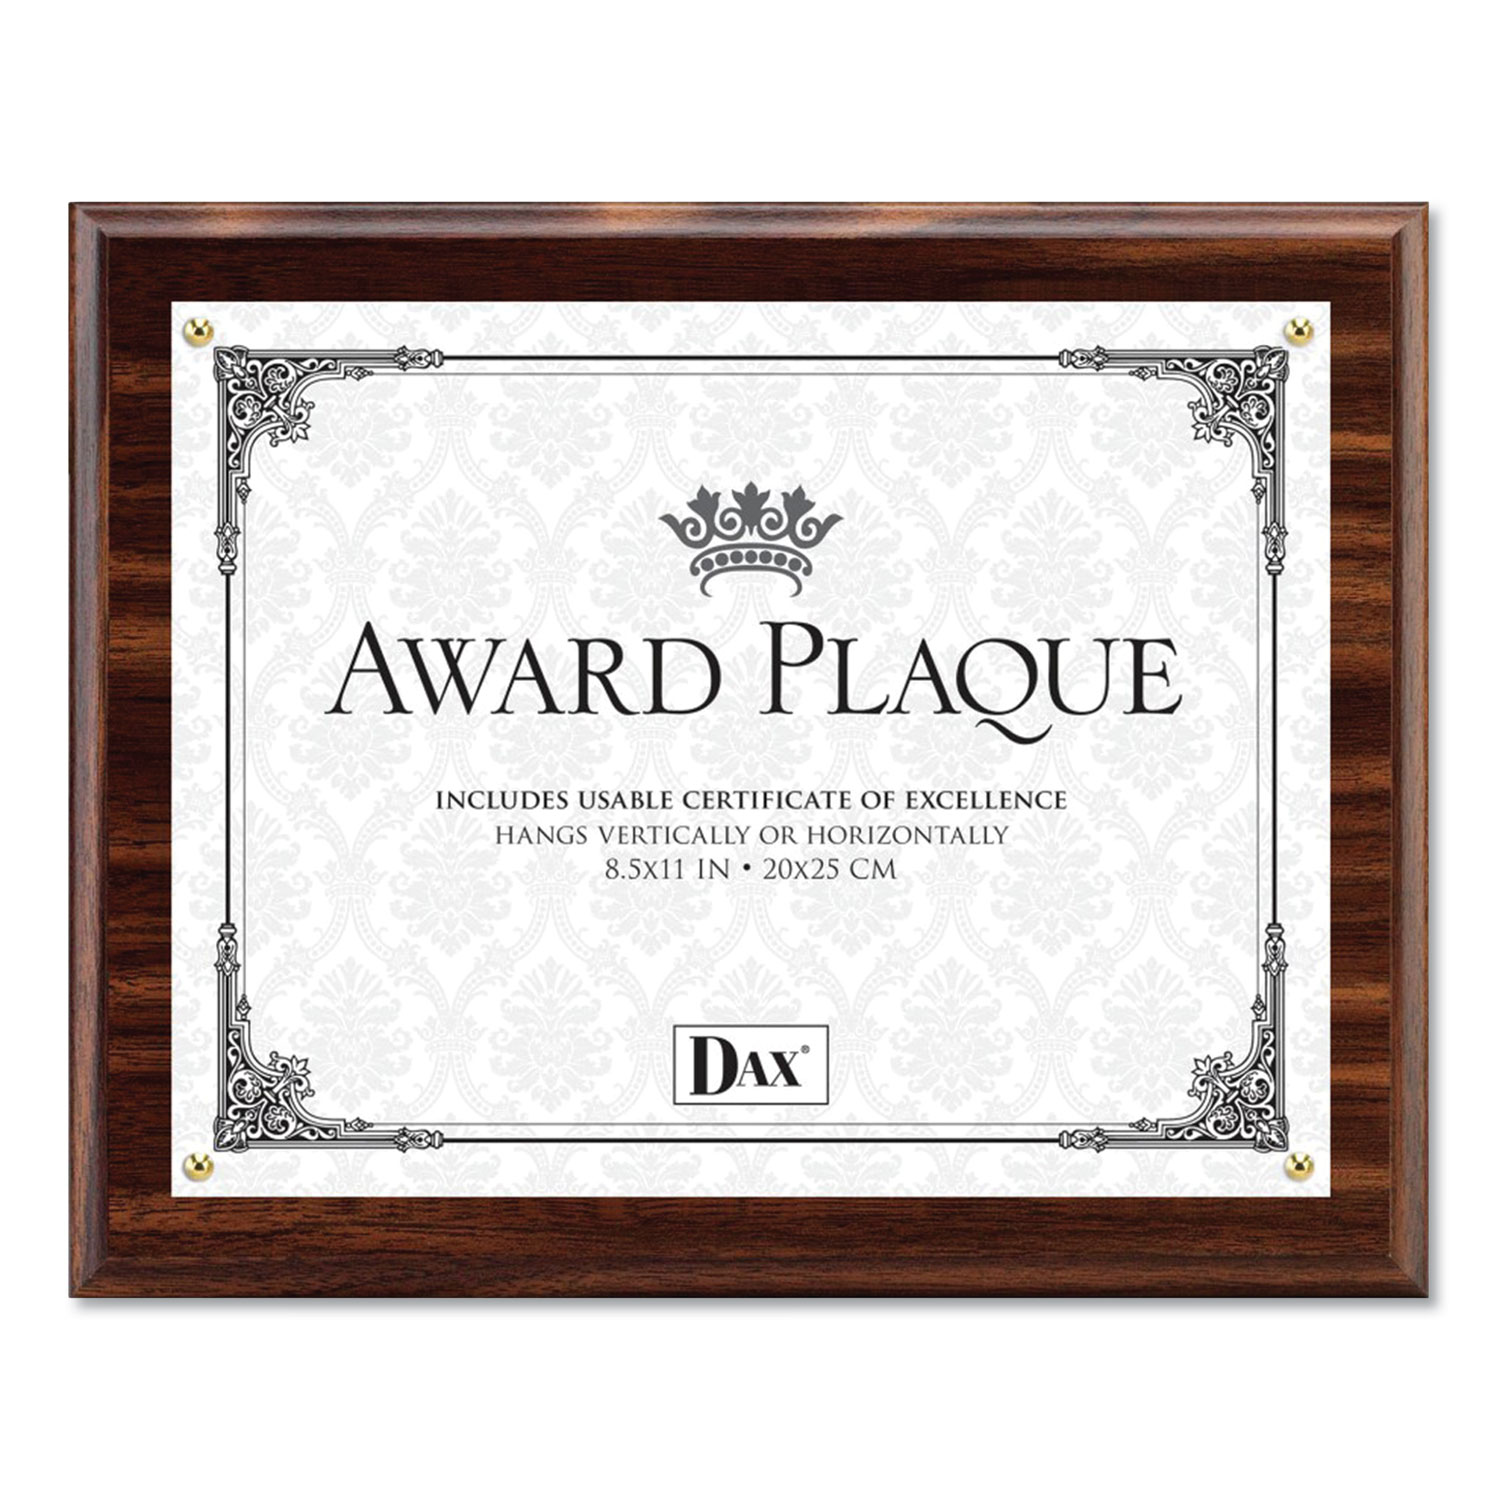 Award Plaque, Wood/Acrylic Frame, Up to 8 1/2 x 11, Walnut